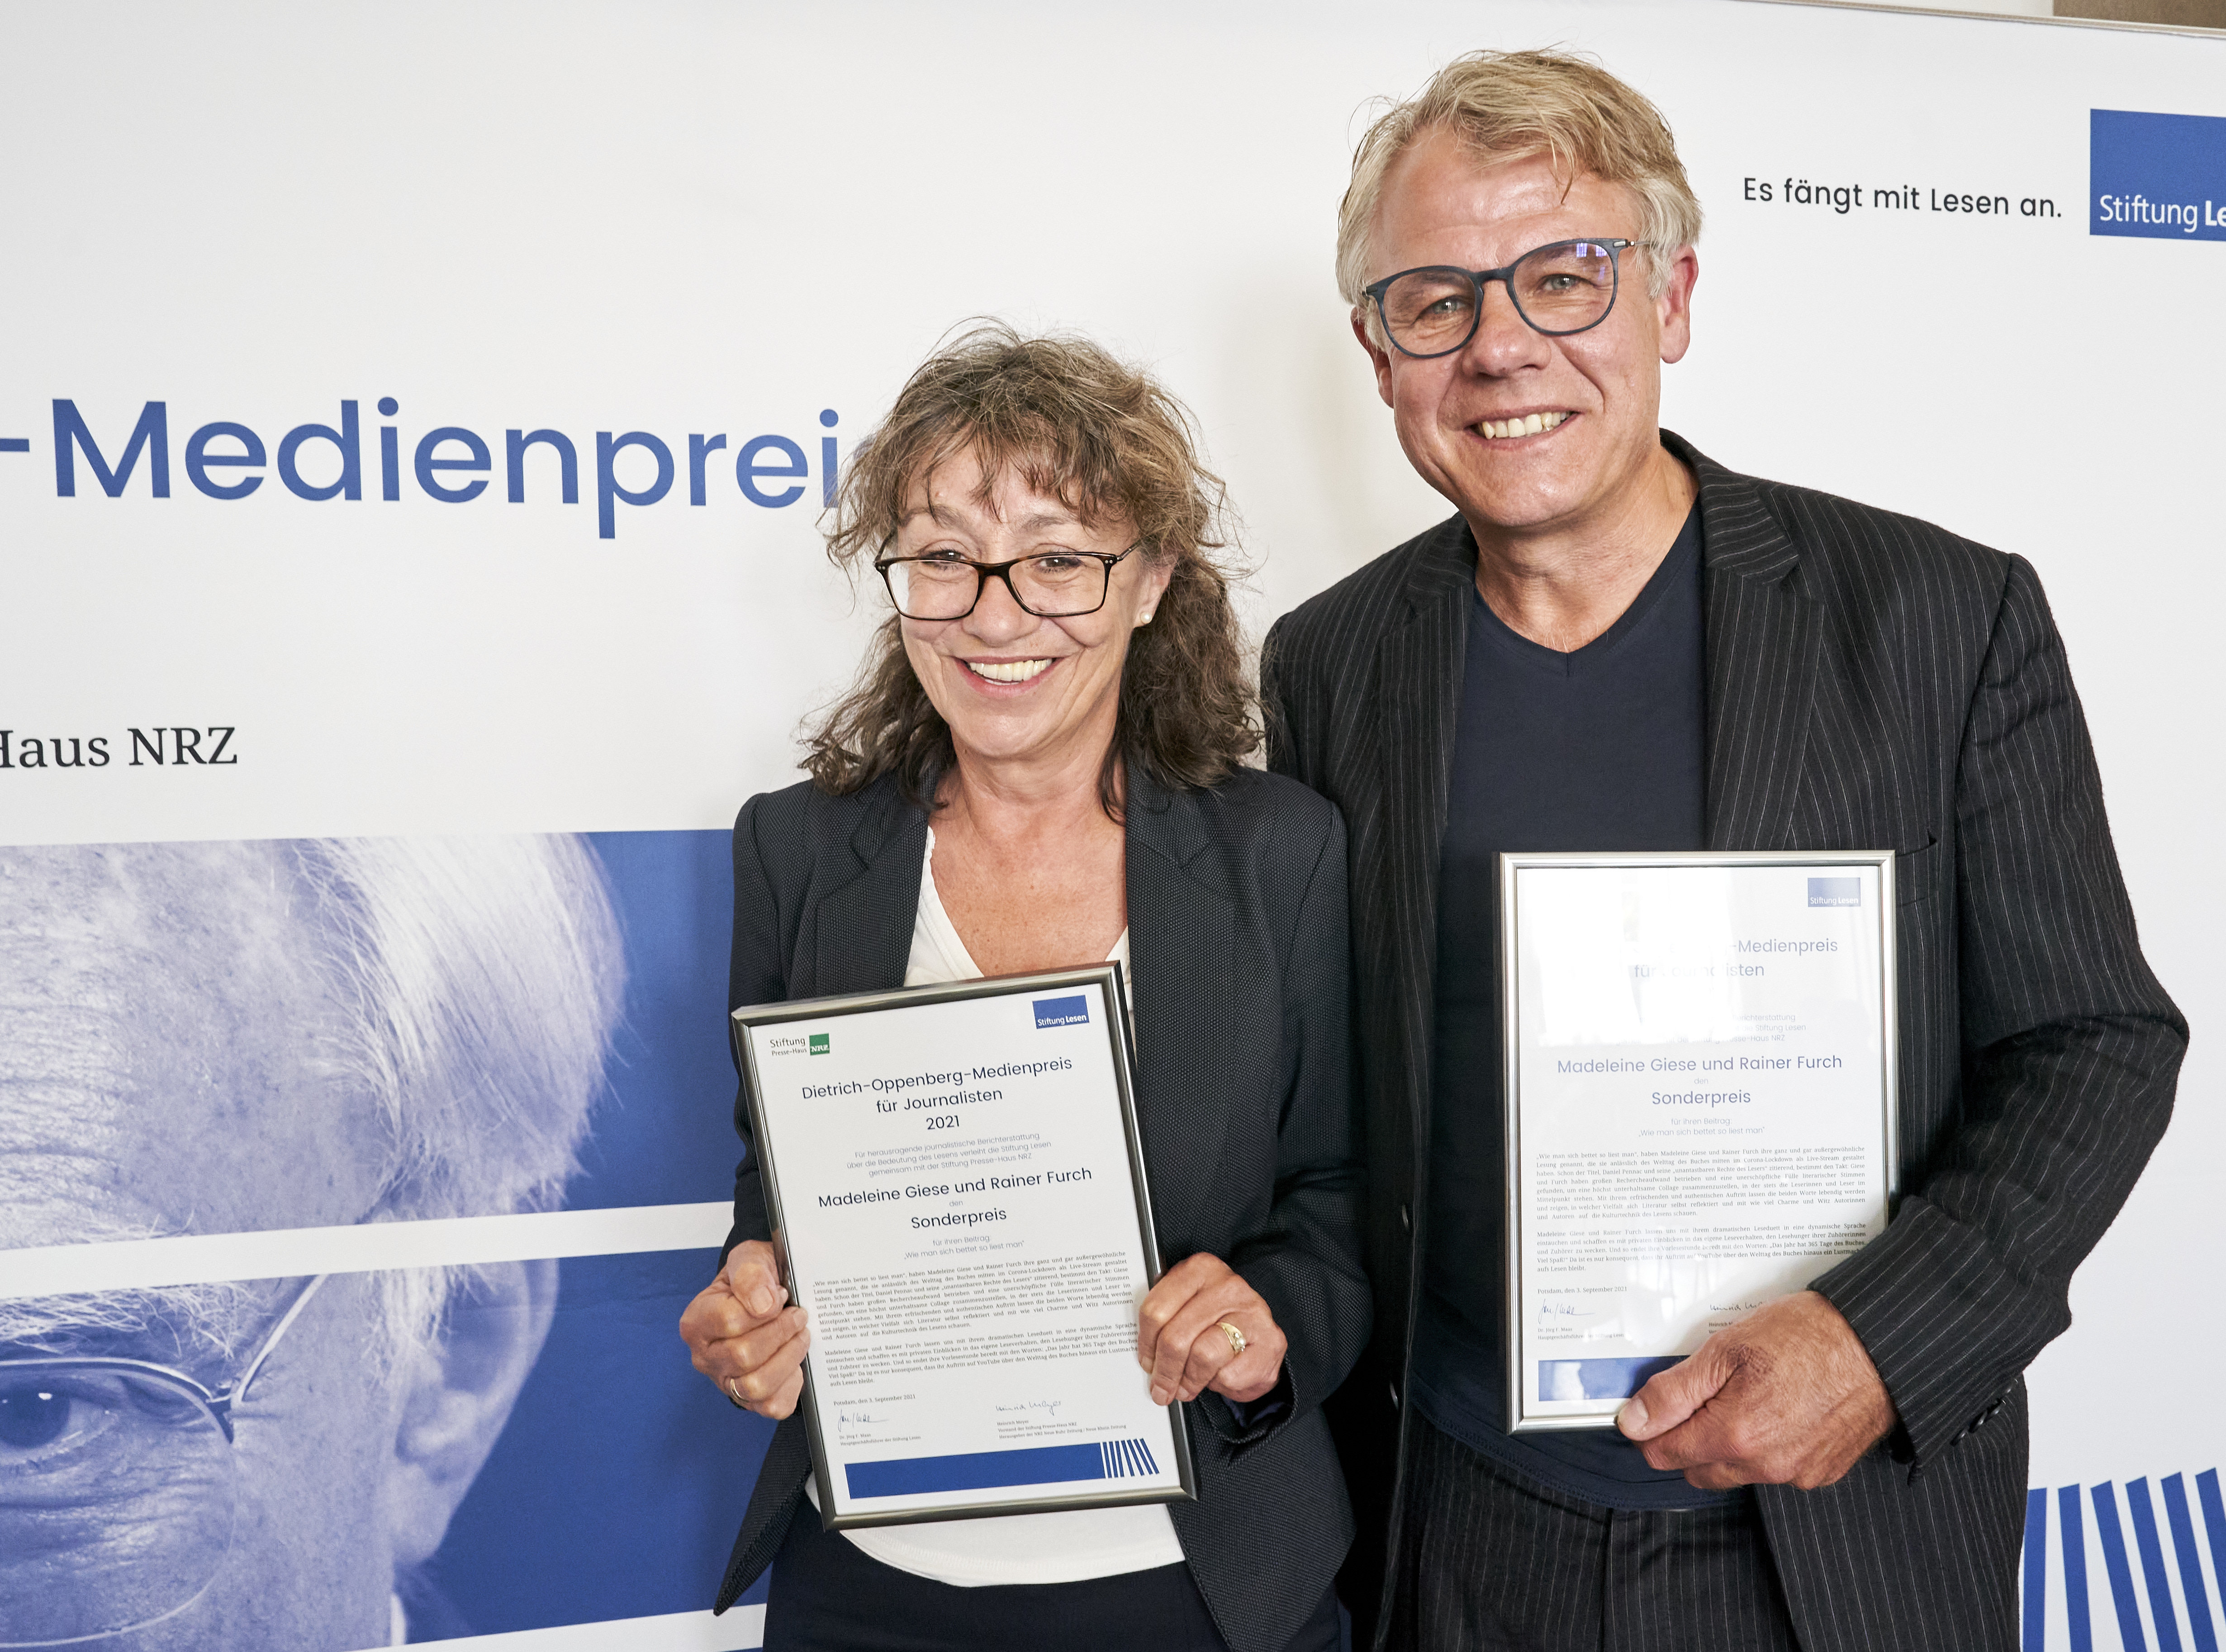 Preisträger Madeleine Giese/Rainer Furch